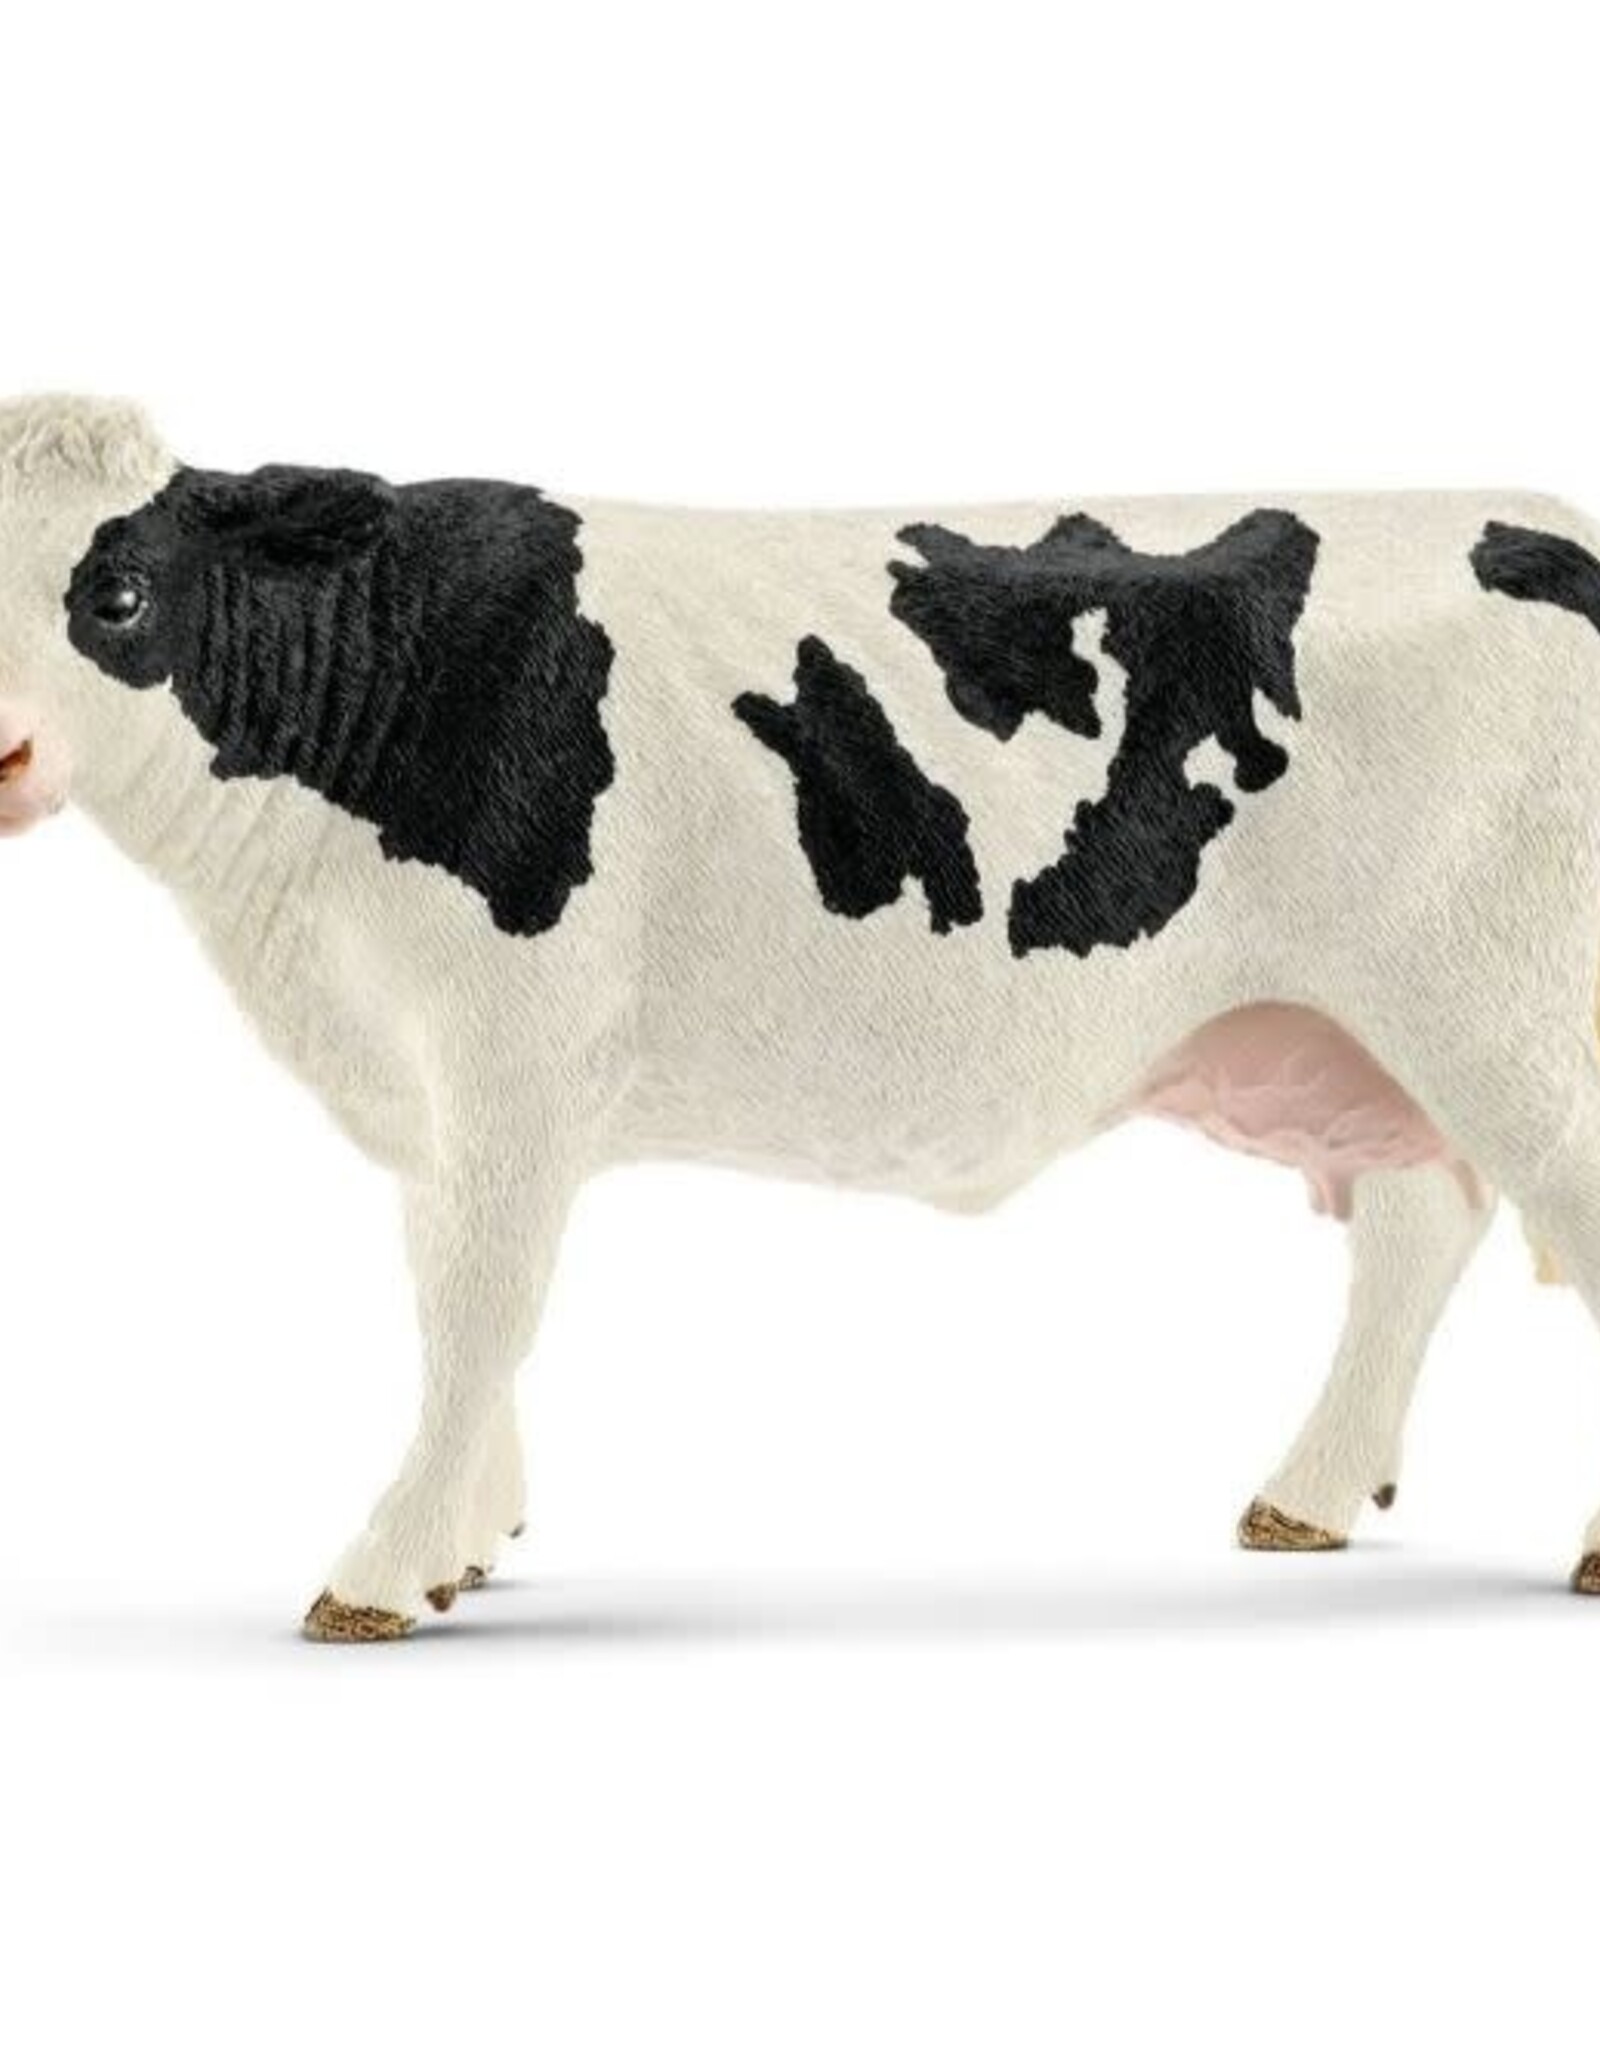 Holstein Cow 13797